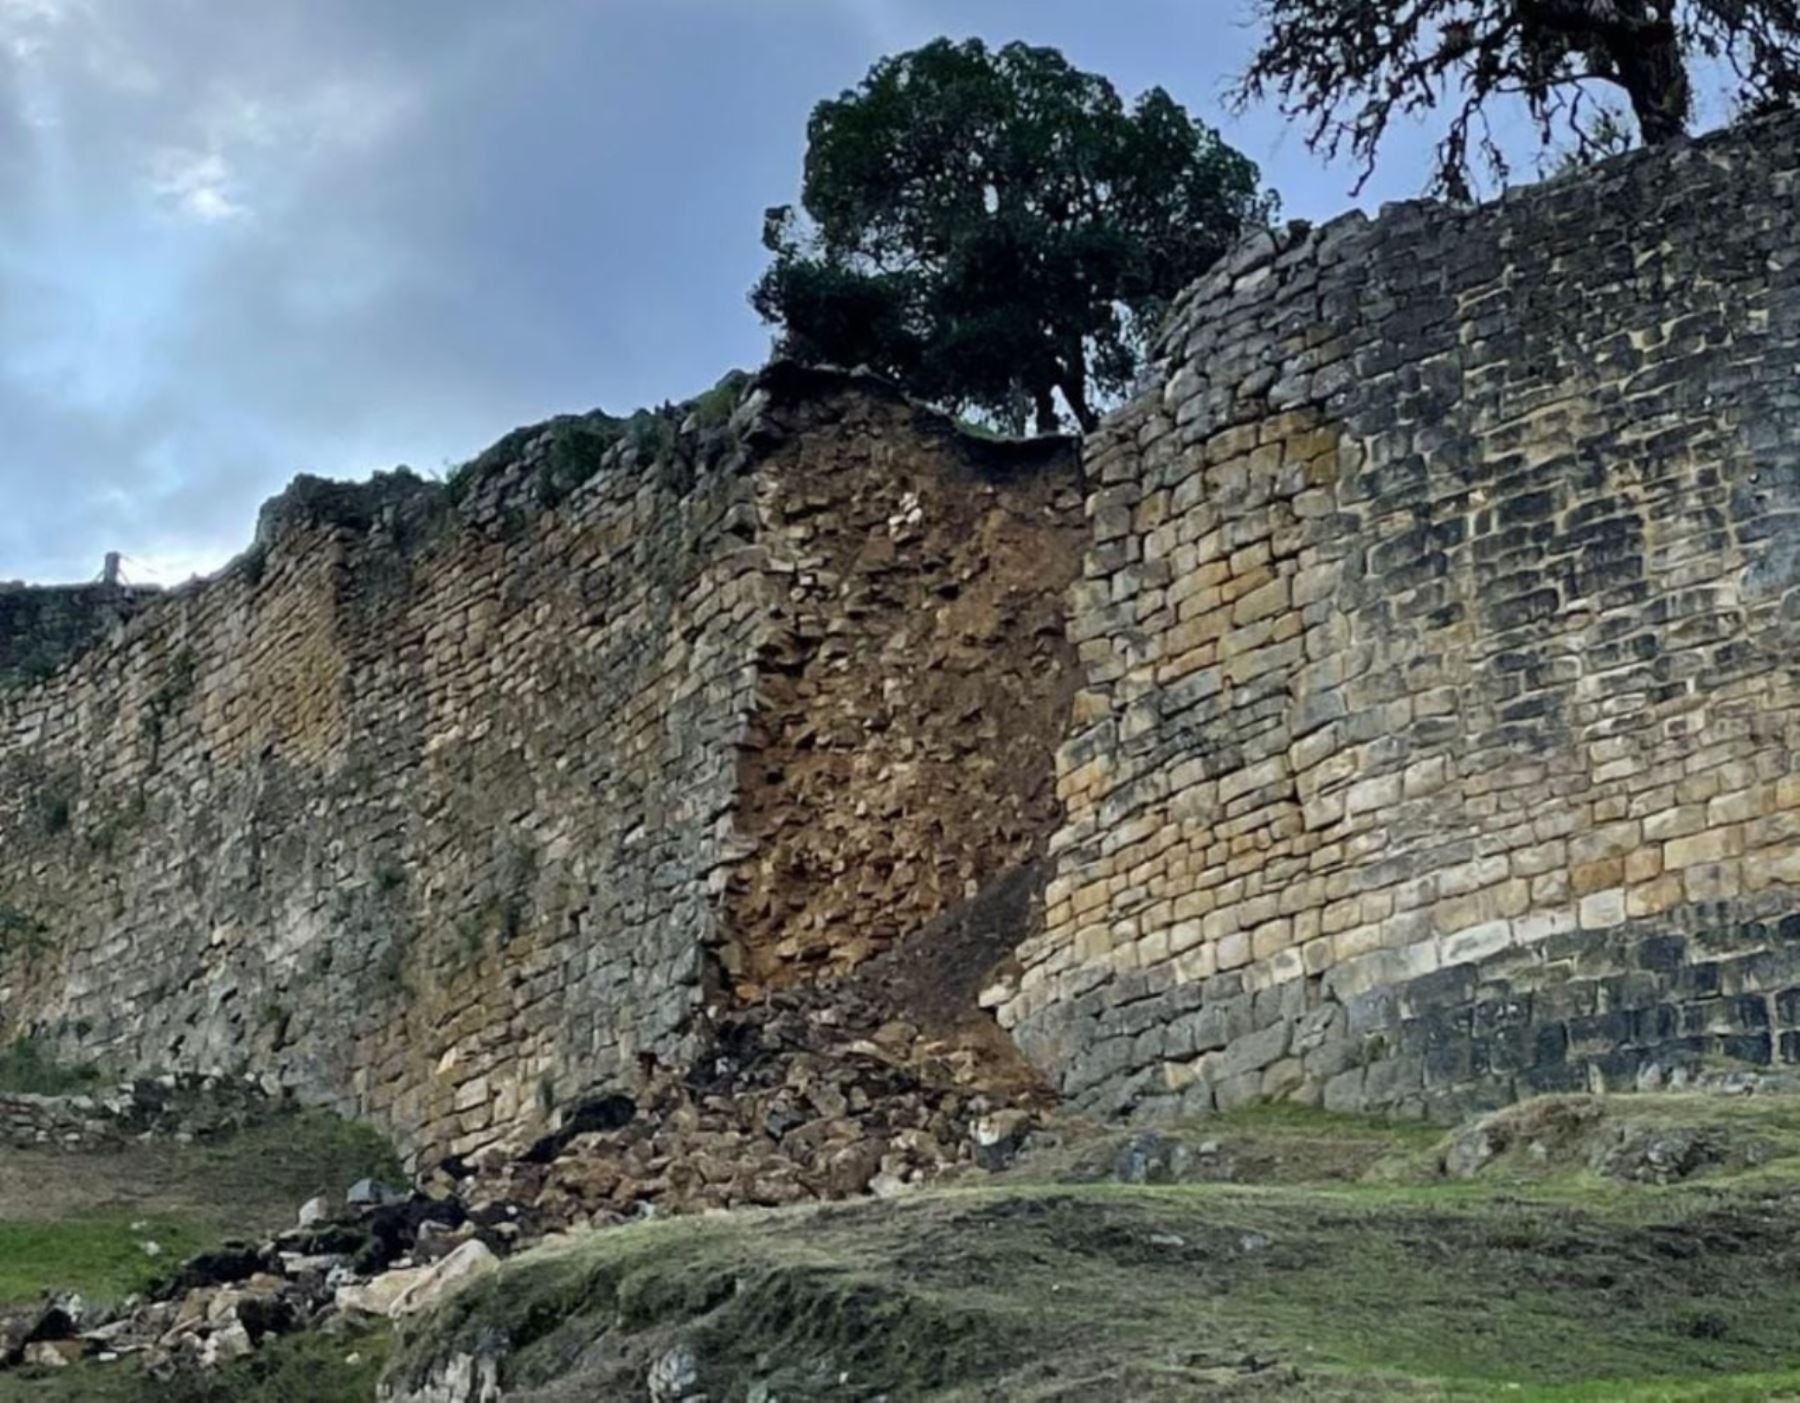 Contraloría cuestiona acciones en zona afectada po elr colapso de muralla perimétrica de la Fortaleza de Kuélap, en Amazonas, y afirma que estas fueron inadecuadas. ANDINA/Difusión